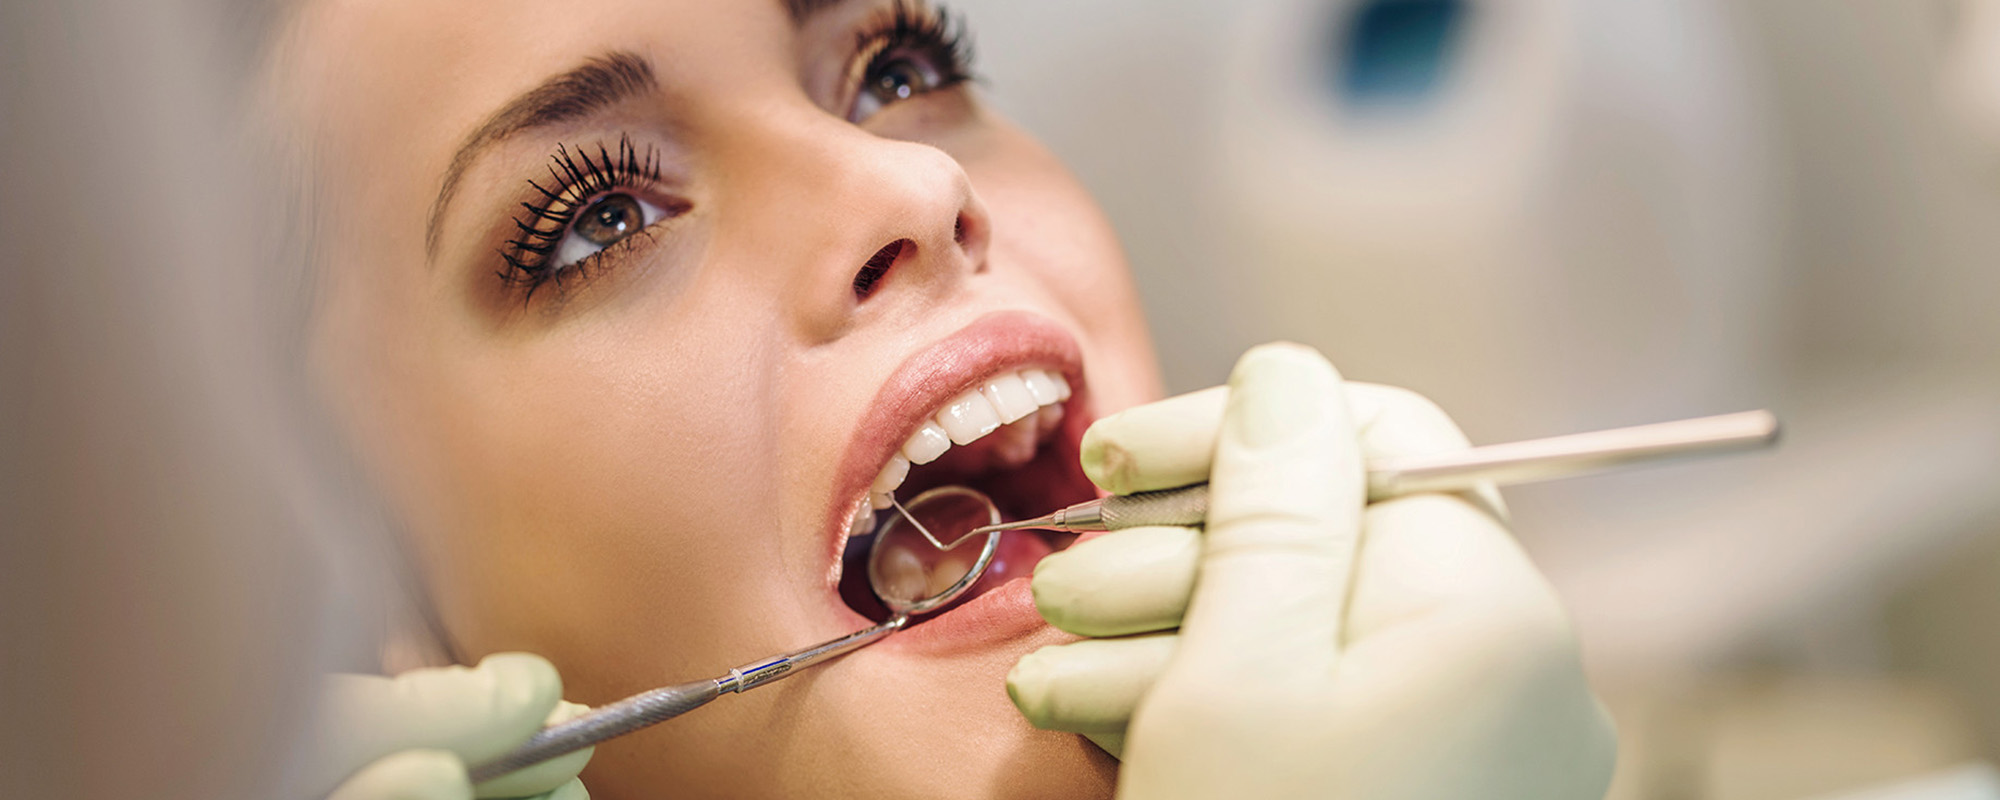 Терапевтическая стоматология в стоматологической клинике «Здоровые зубы»